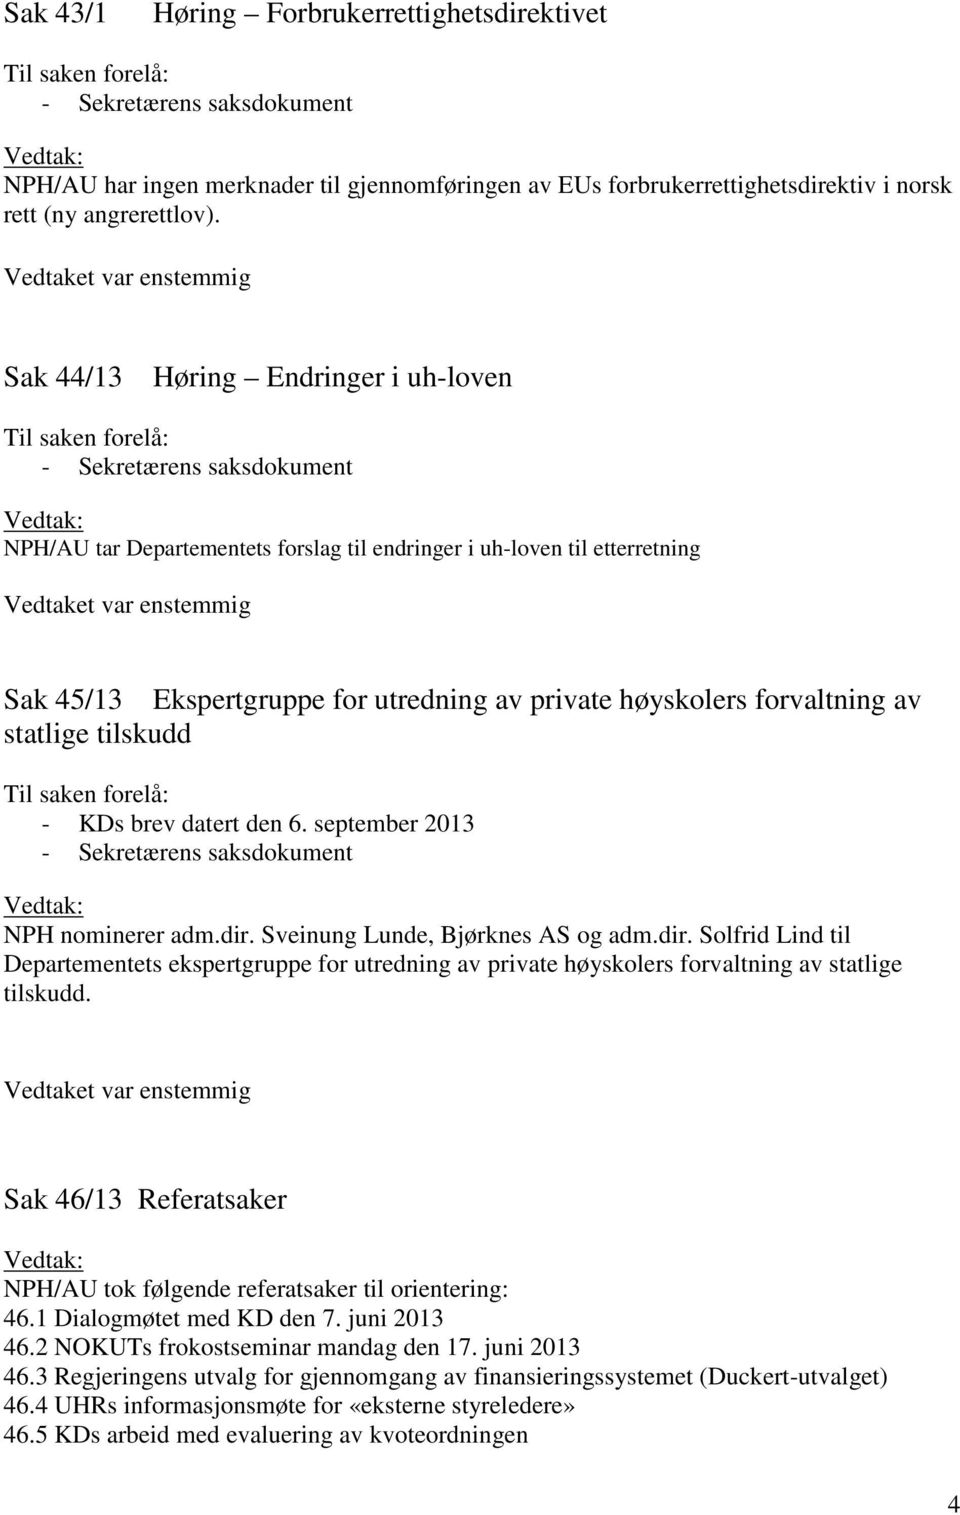 tilskudd - KDs brev datert den 6. september 2013 NPH nominerer adm.dir. Sveinung Lunde, Bjørknes AS og adm.dir. Solfrid Lind til Departementets ekspertgruppe for utredning av private høyskolers forvaltning av statlige tilskudd.